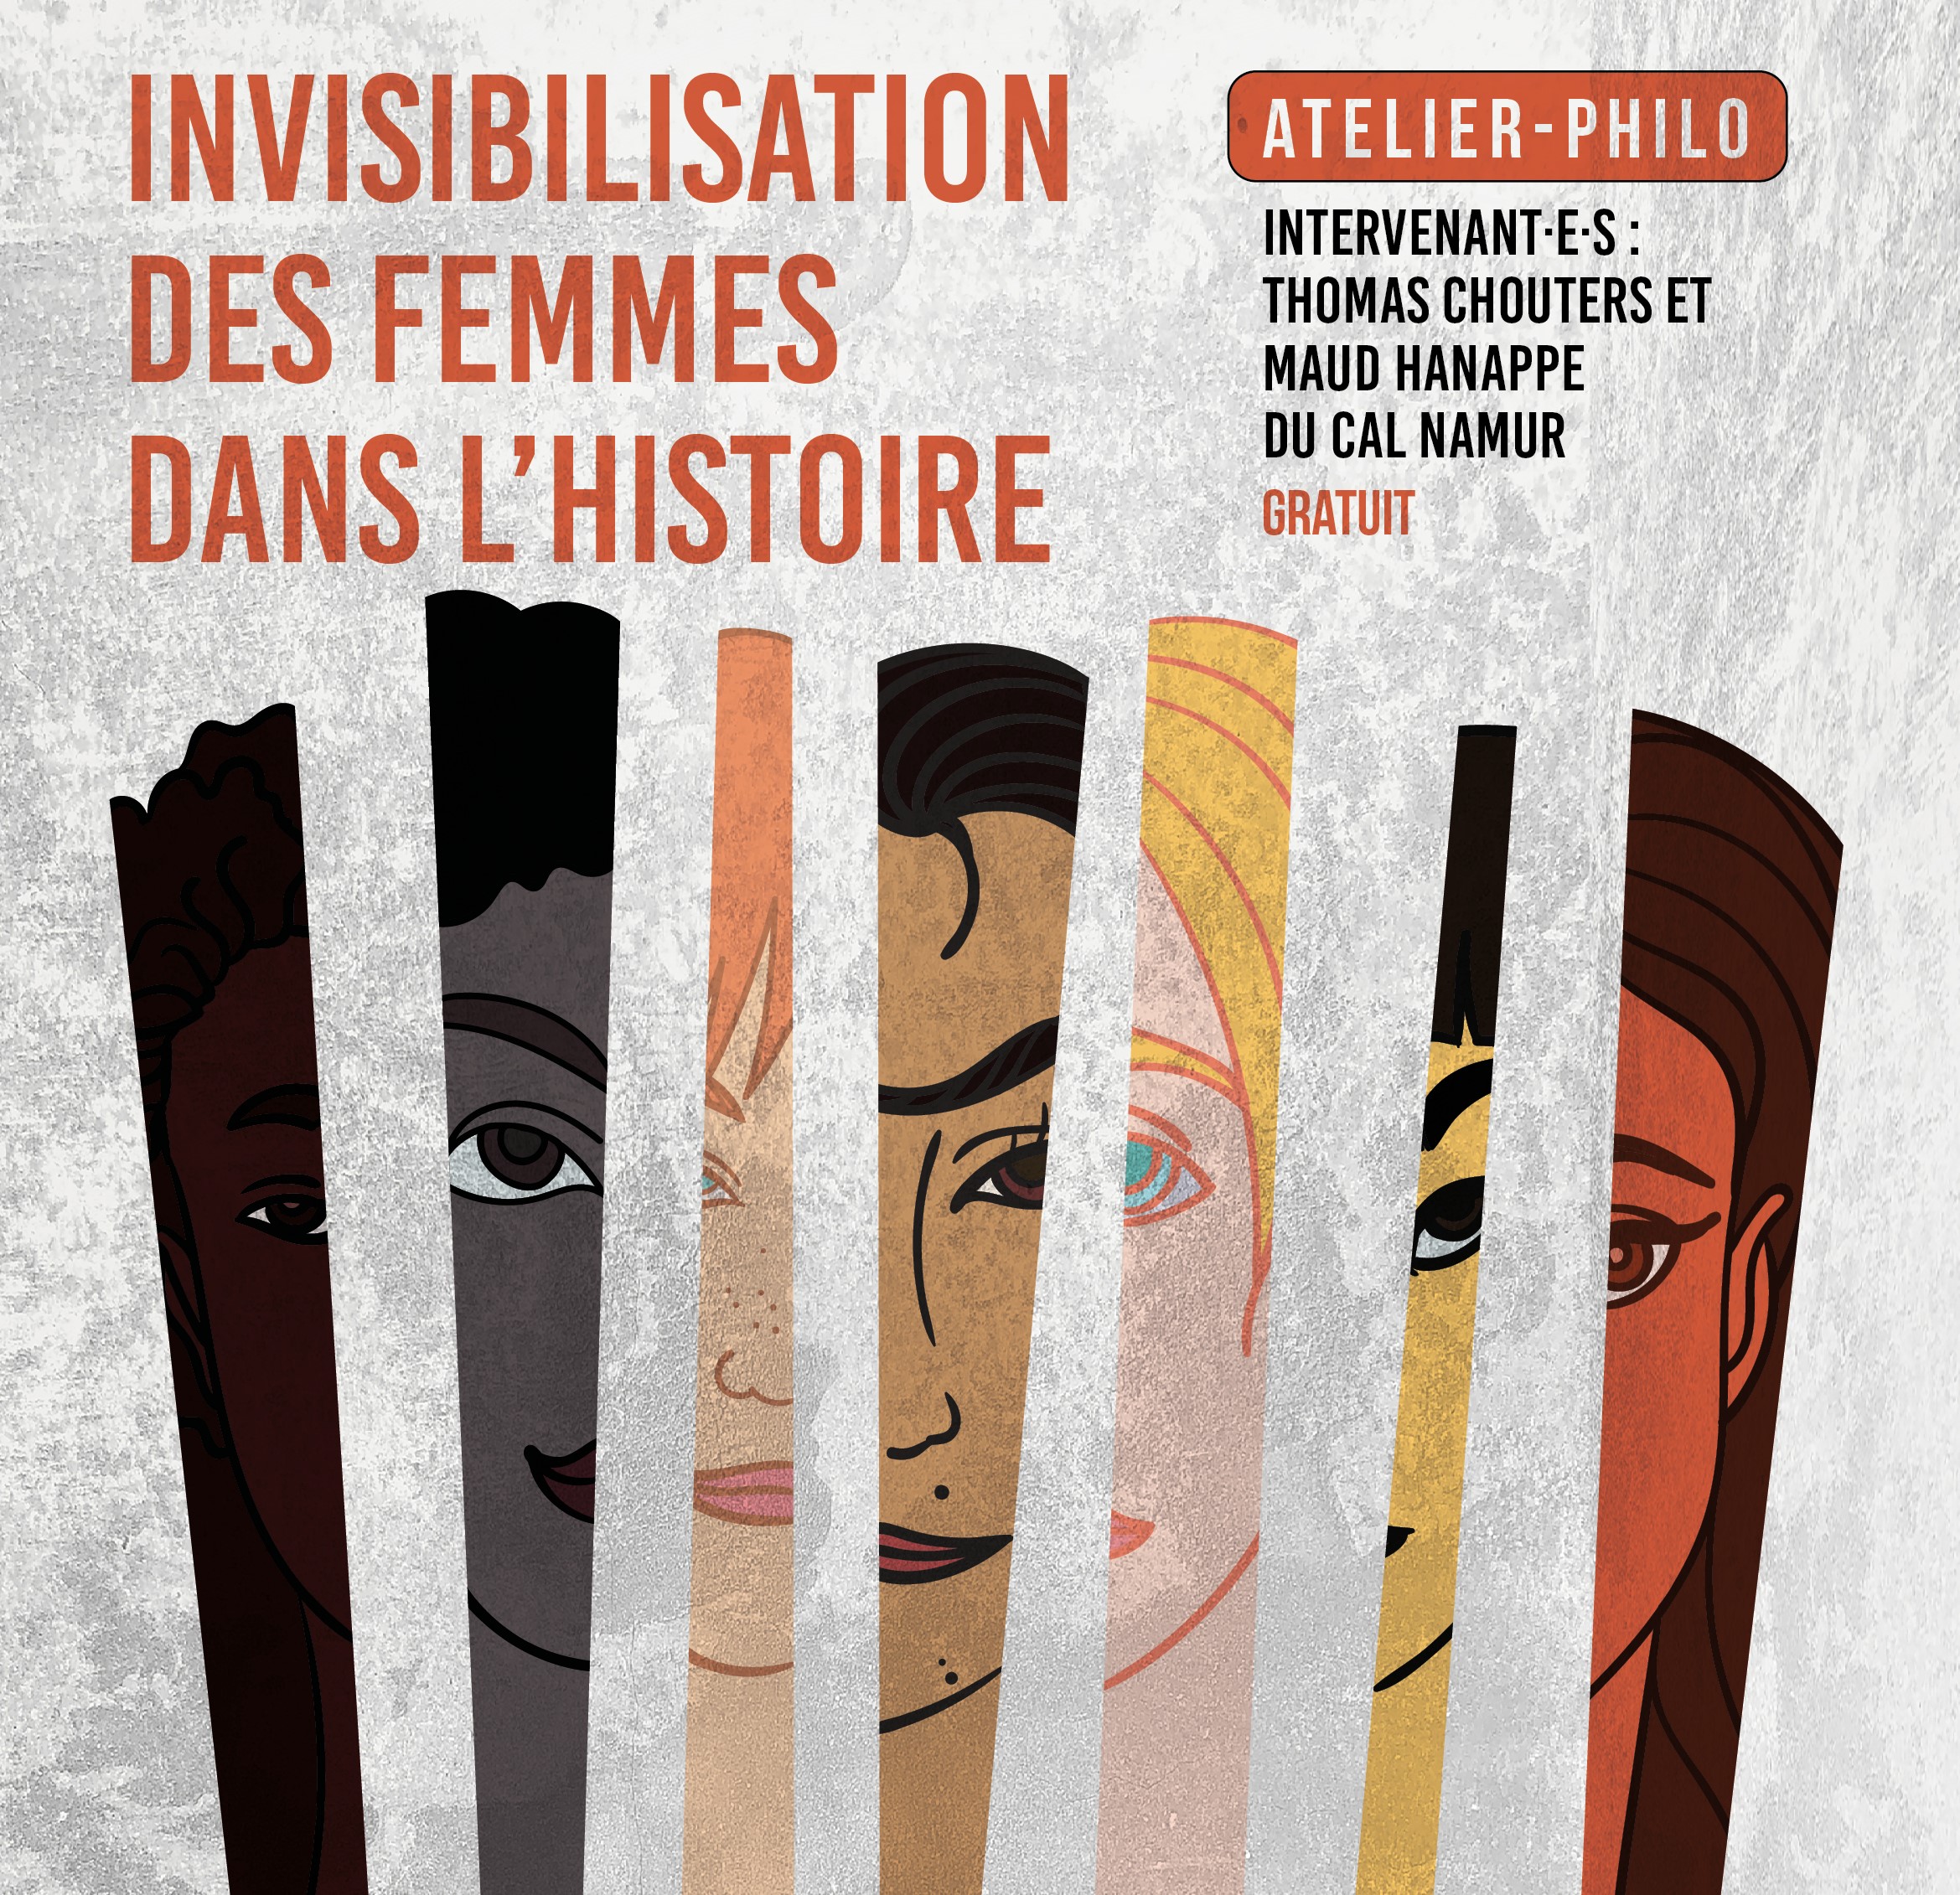 Atelier philo: Invisibilisation des femmes dans l’histoire